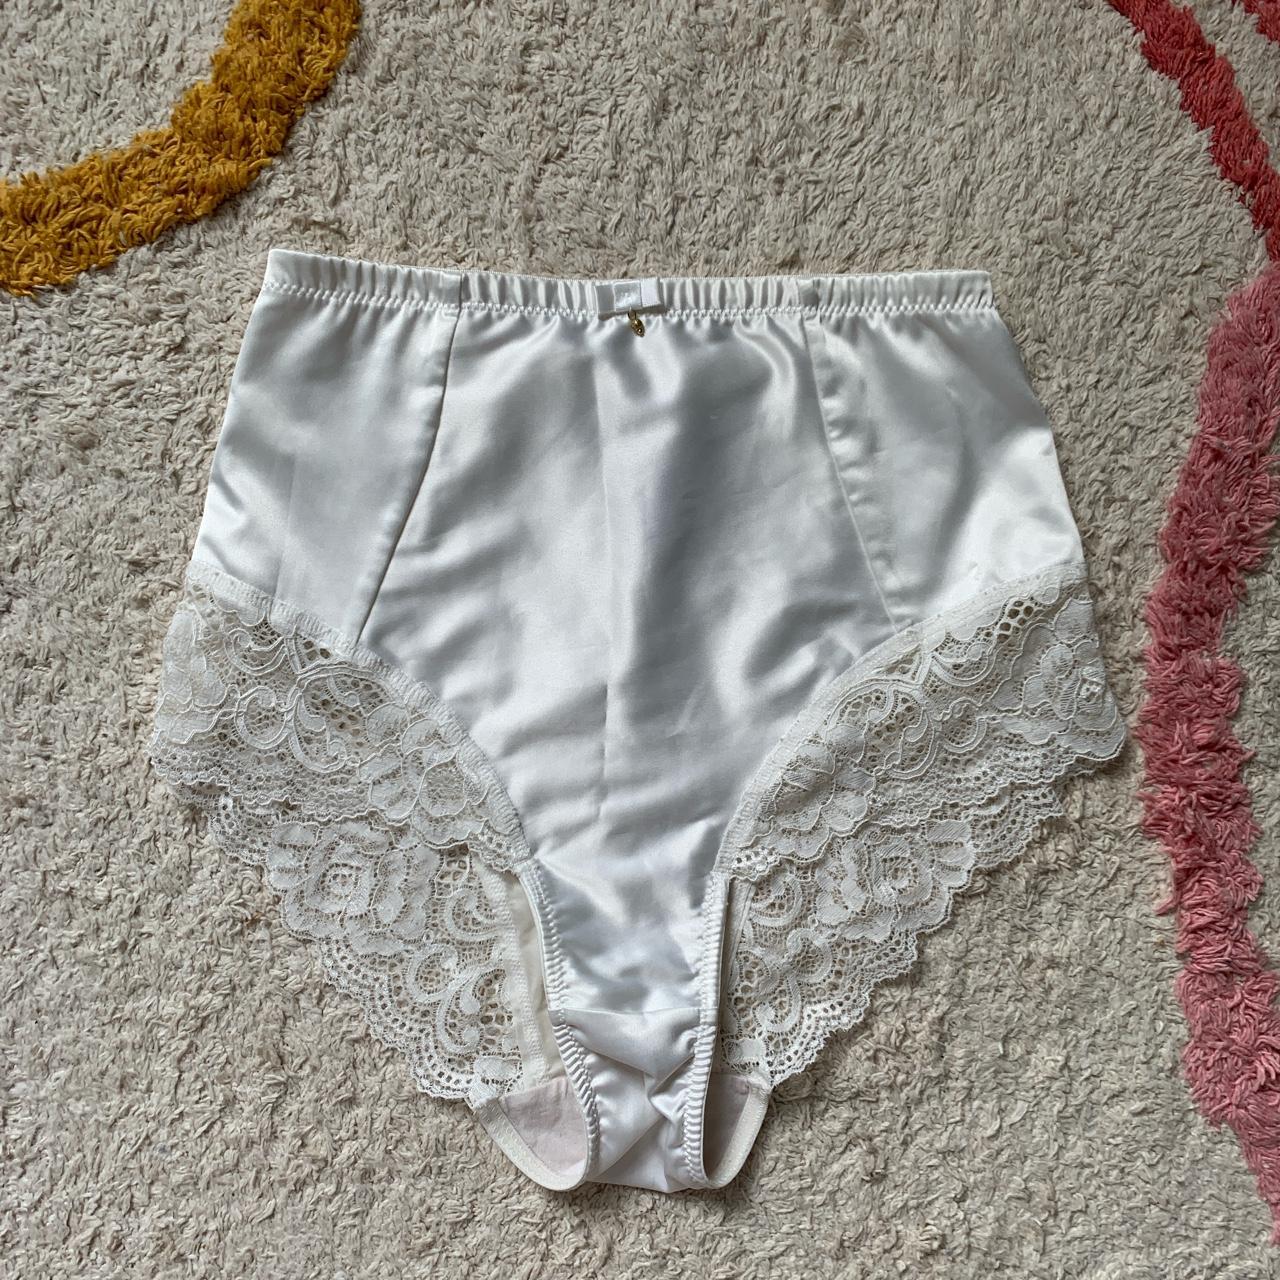 Panache Women's Cream Panties | Depop